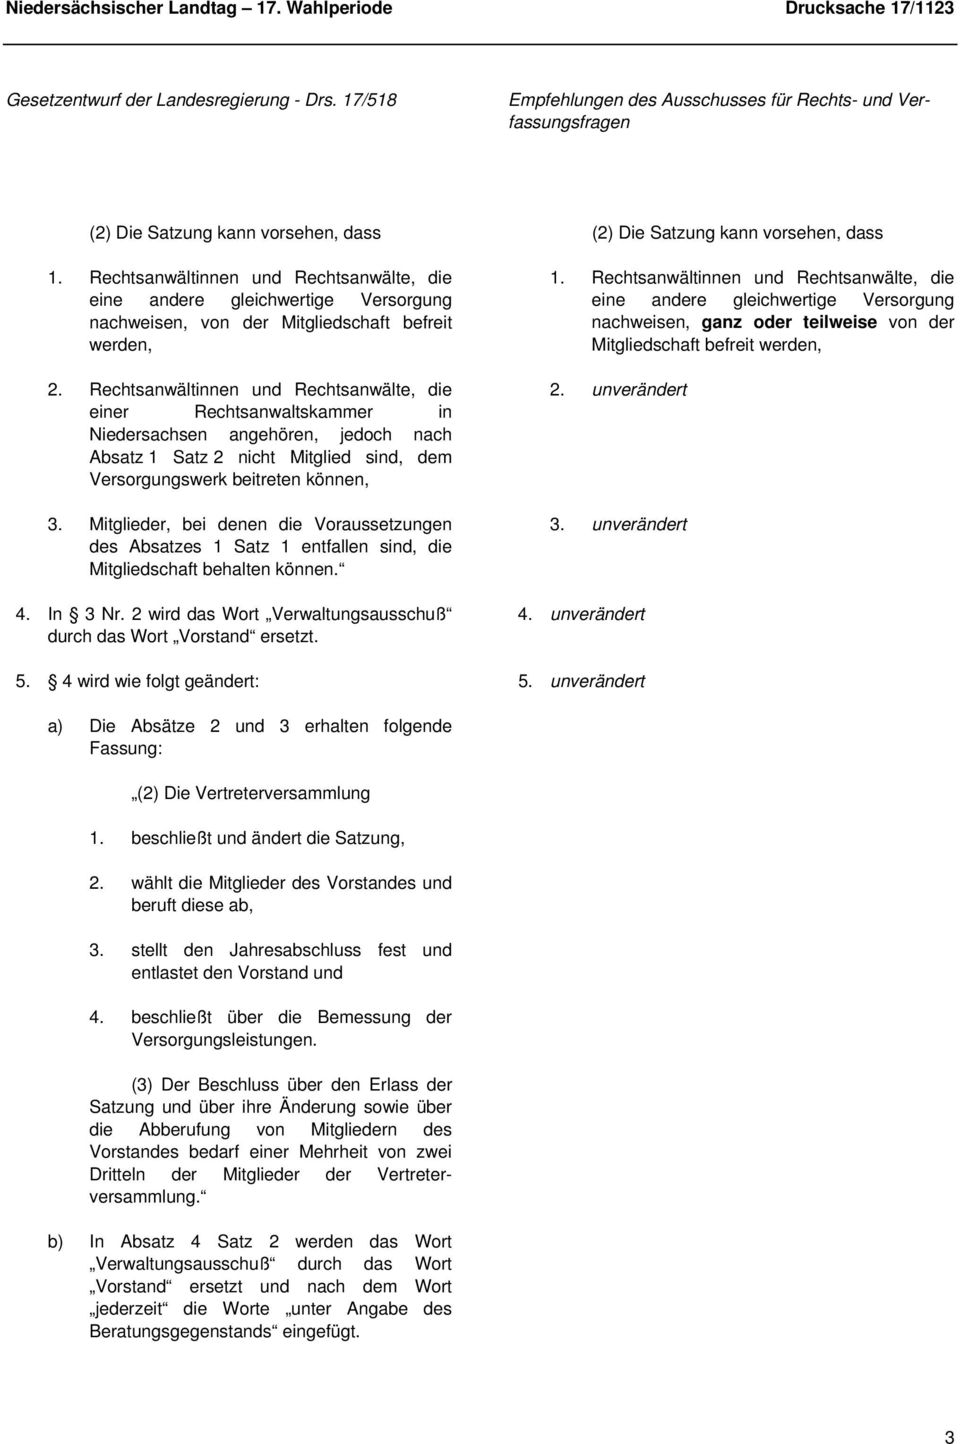 Rechtsanwältinnen und Rechtsanwälte, die einer Rechtsanwaltskammer in Niedersachsen angehören, jedoch nach Absatz 1 Satz 2 nicht Mitglied sind, dem Versorgungswerk beitreten können, 3.